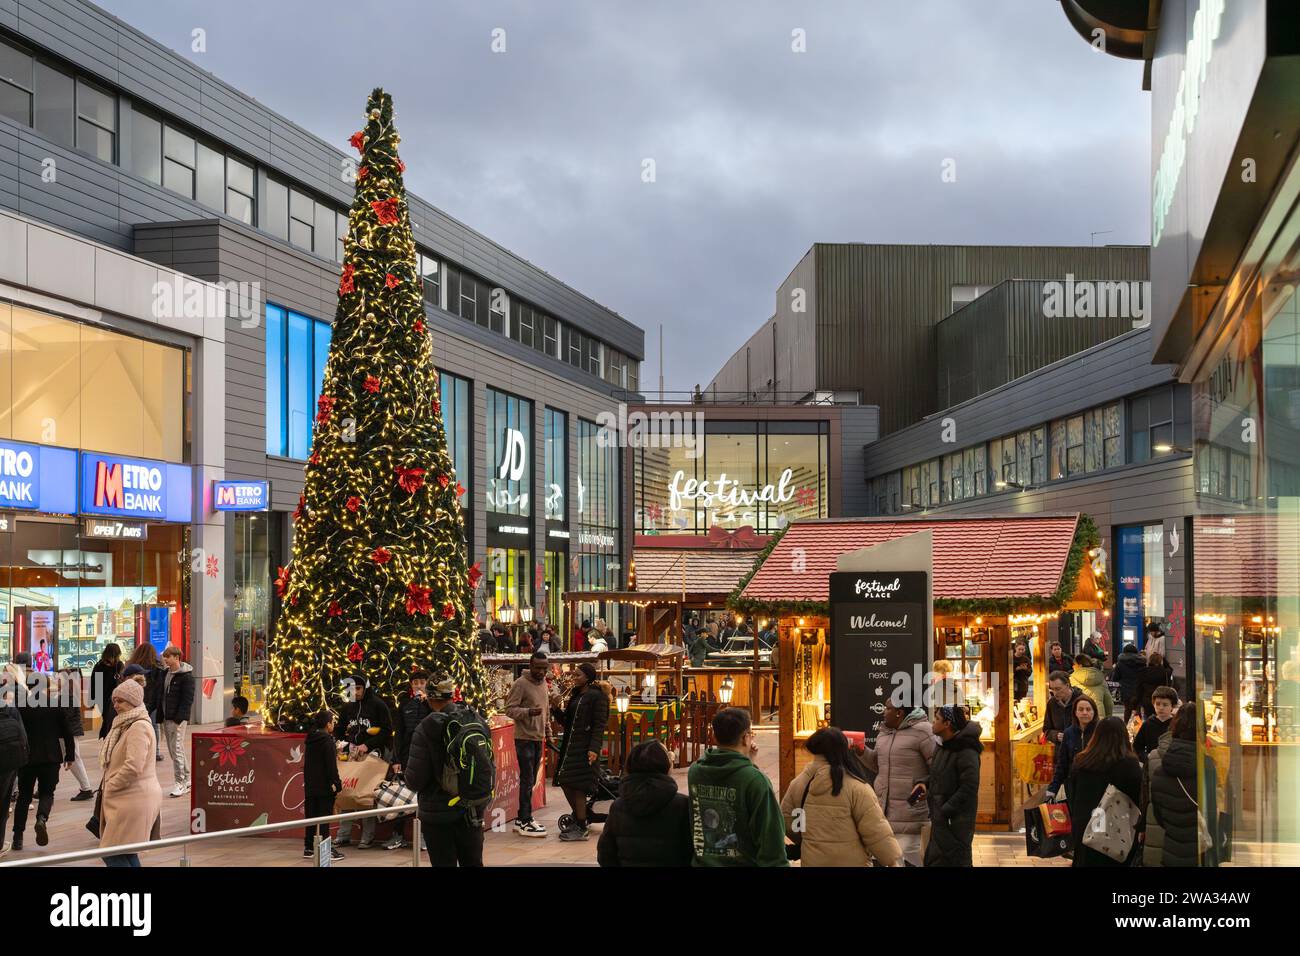 Weihnachtseinkäufer, Marktstände und Weihnachtsbaum im Einkaufszentrum Malls vor dem Festival Place in der Abenddämmerung. Basingstoke, Großbritannien Stockfoto